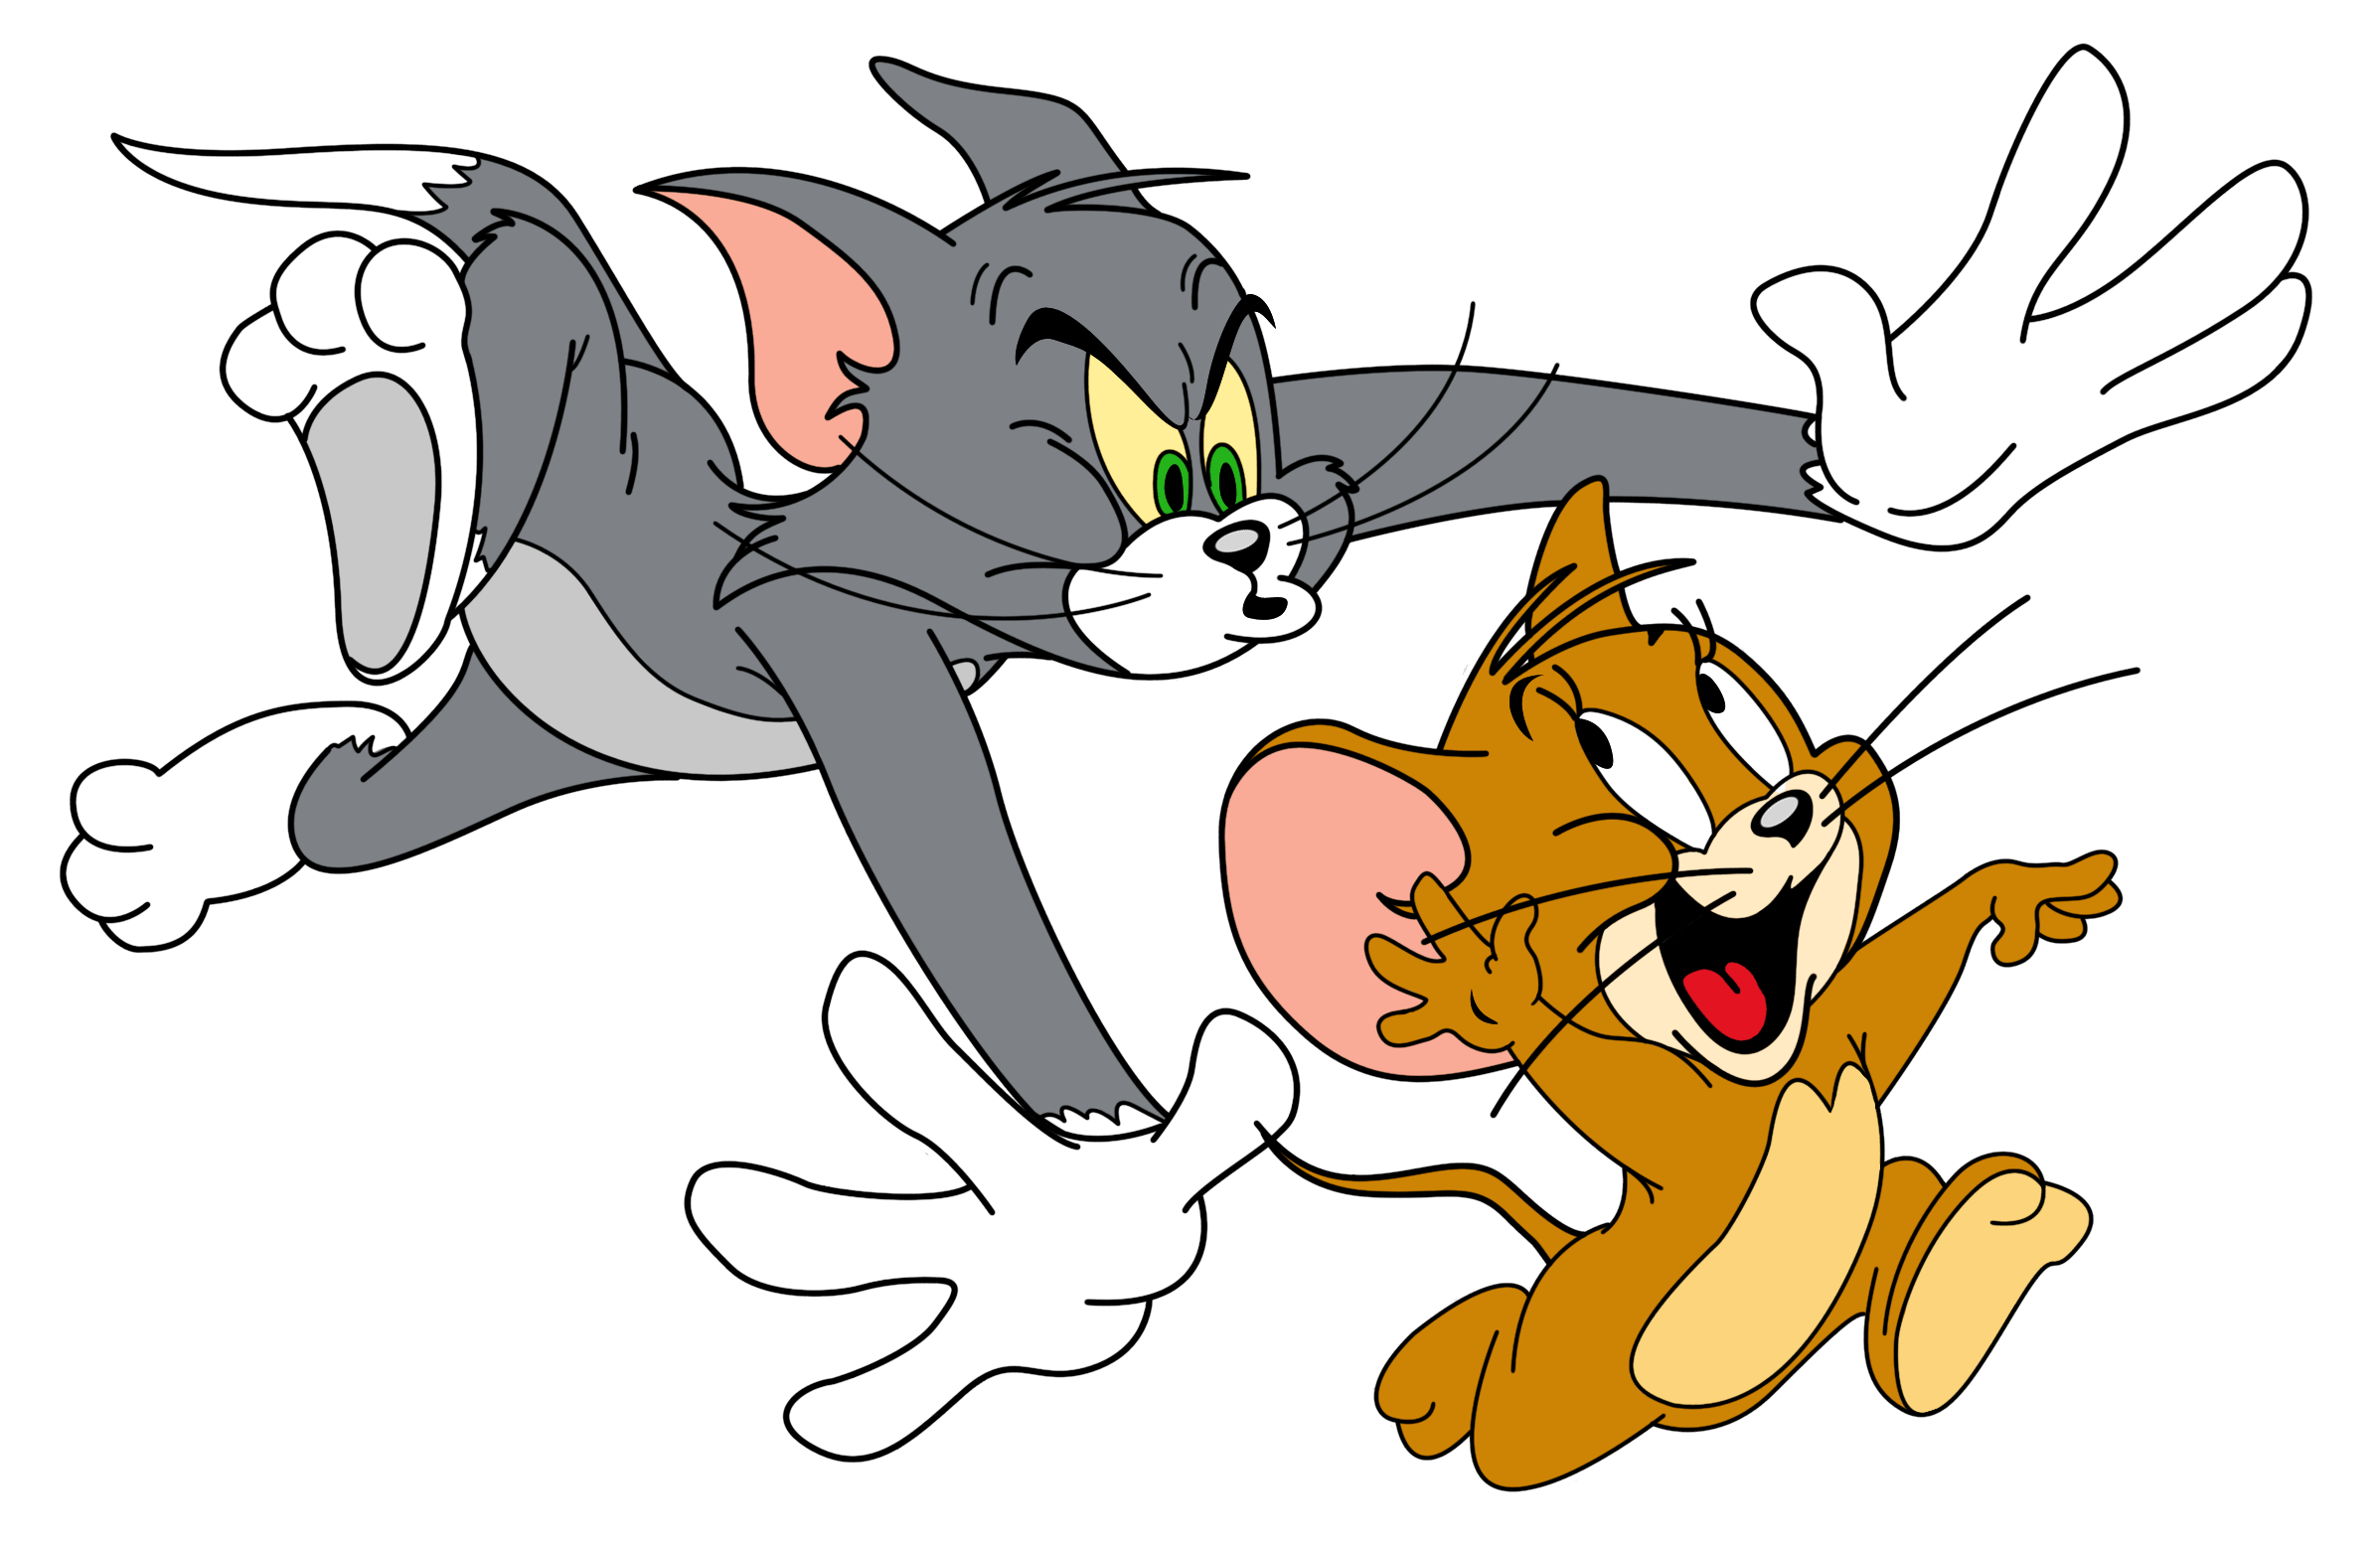 Tom and Jerry. Том и Джерри Джерри. Tom and Jerry cartoon. Tom from Tom and Jerry. 3 х лет на том